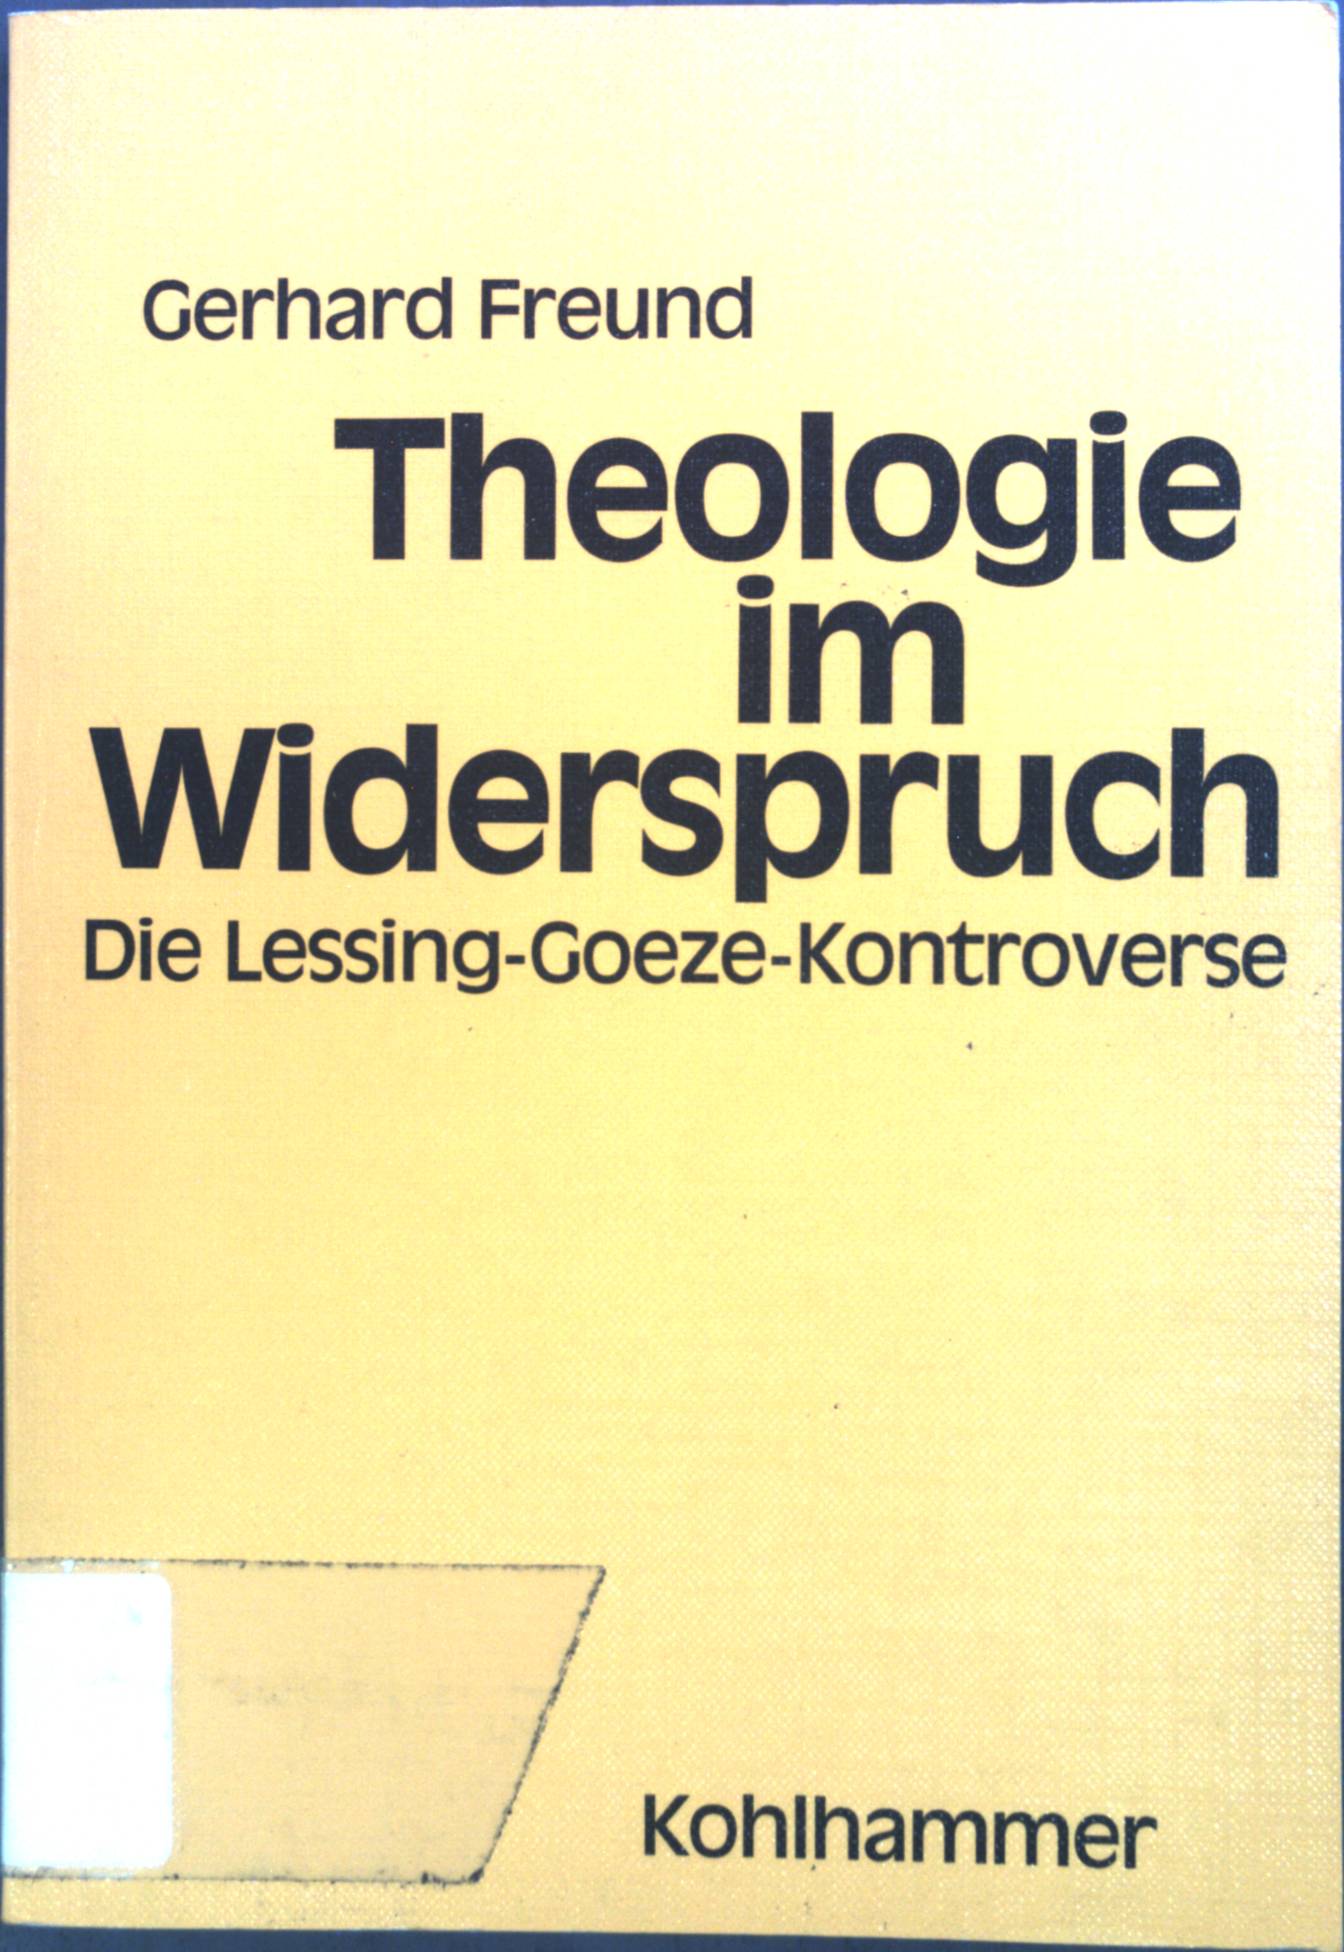 Theologie im Widerspruch : die Lessing-Goeze-Kontroverse. - Freund, Gerhard